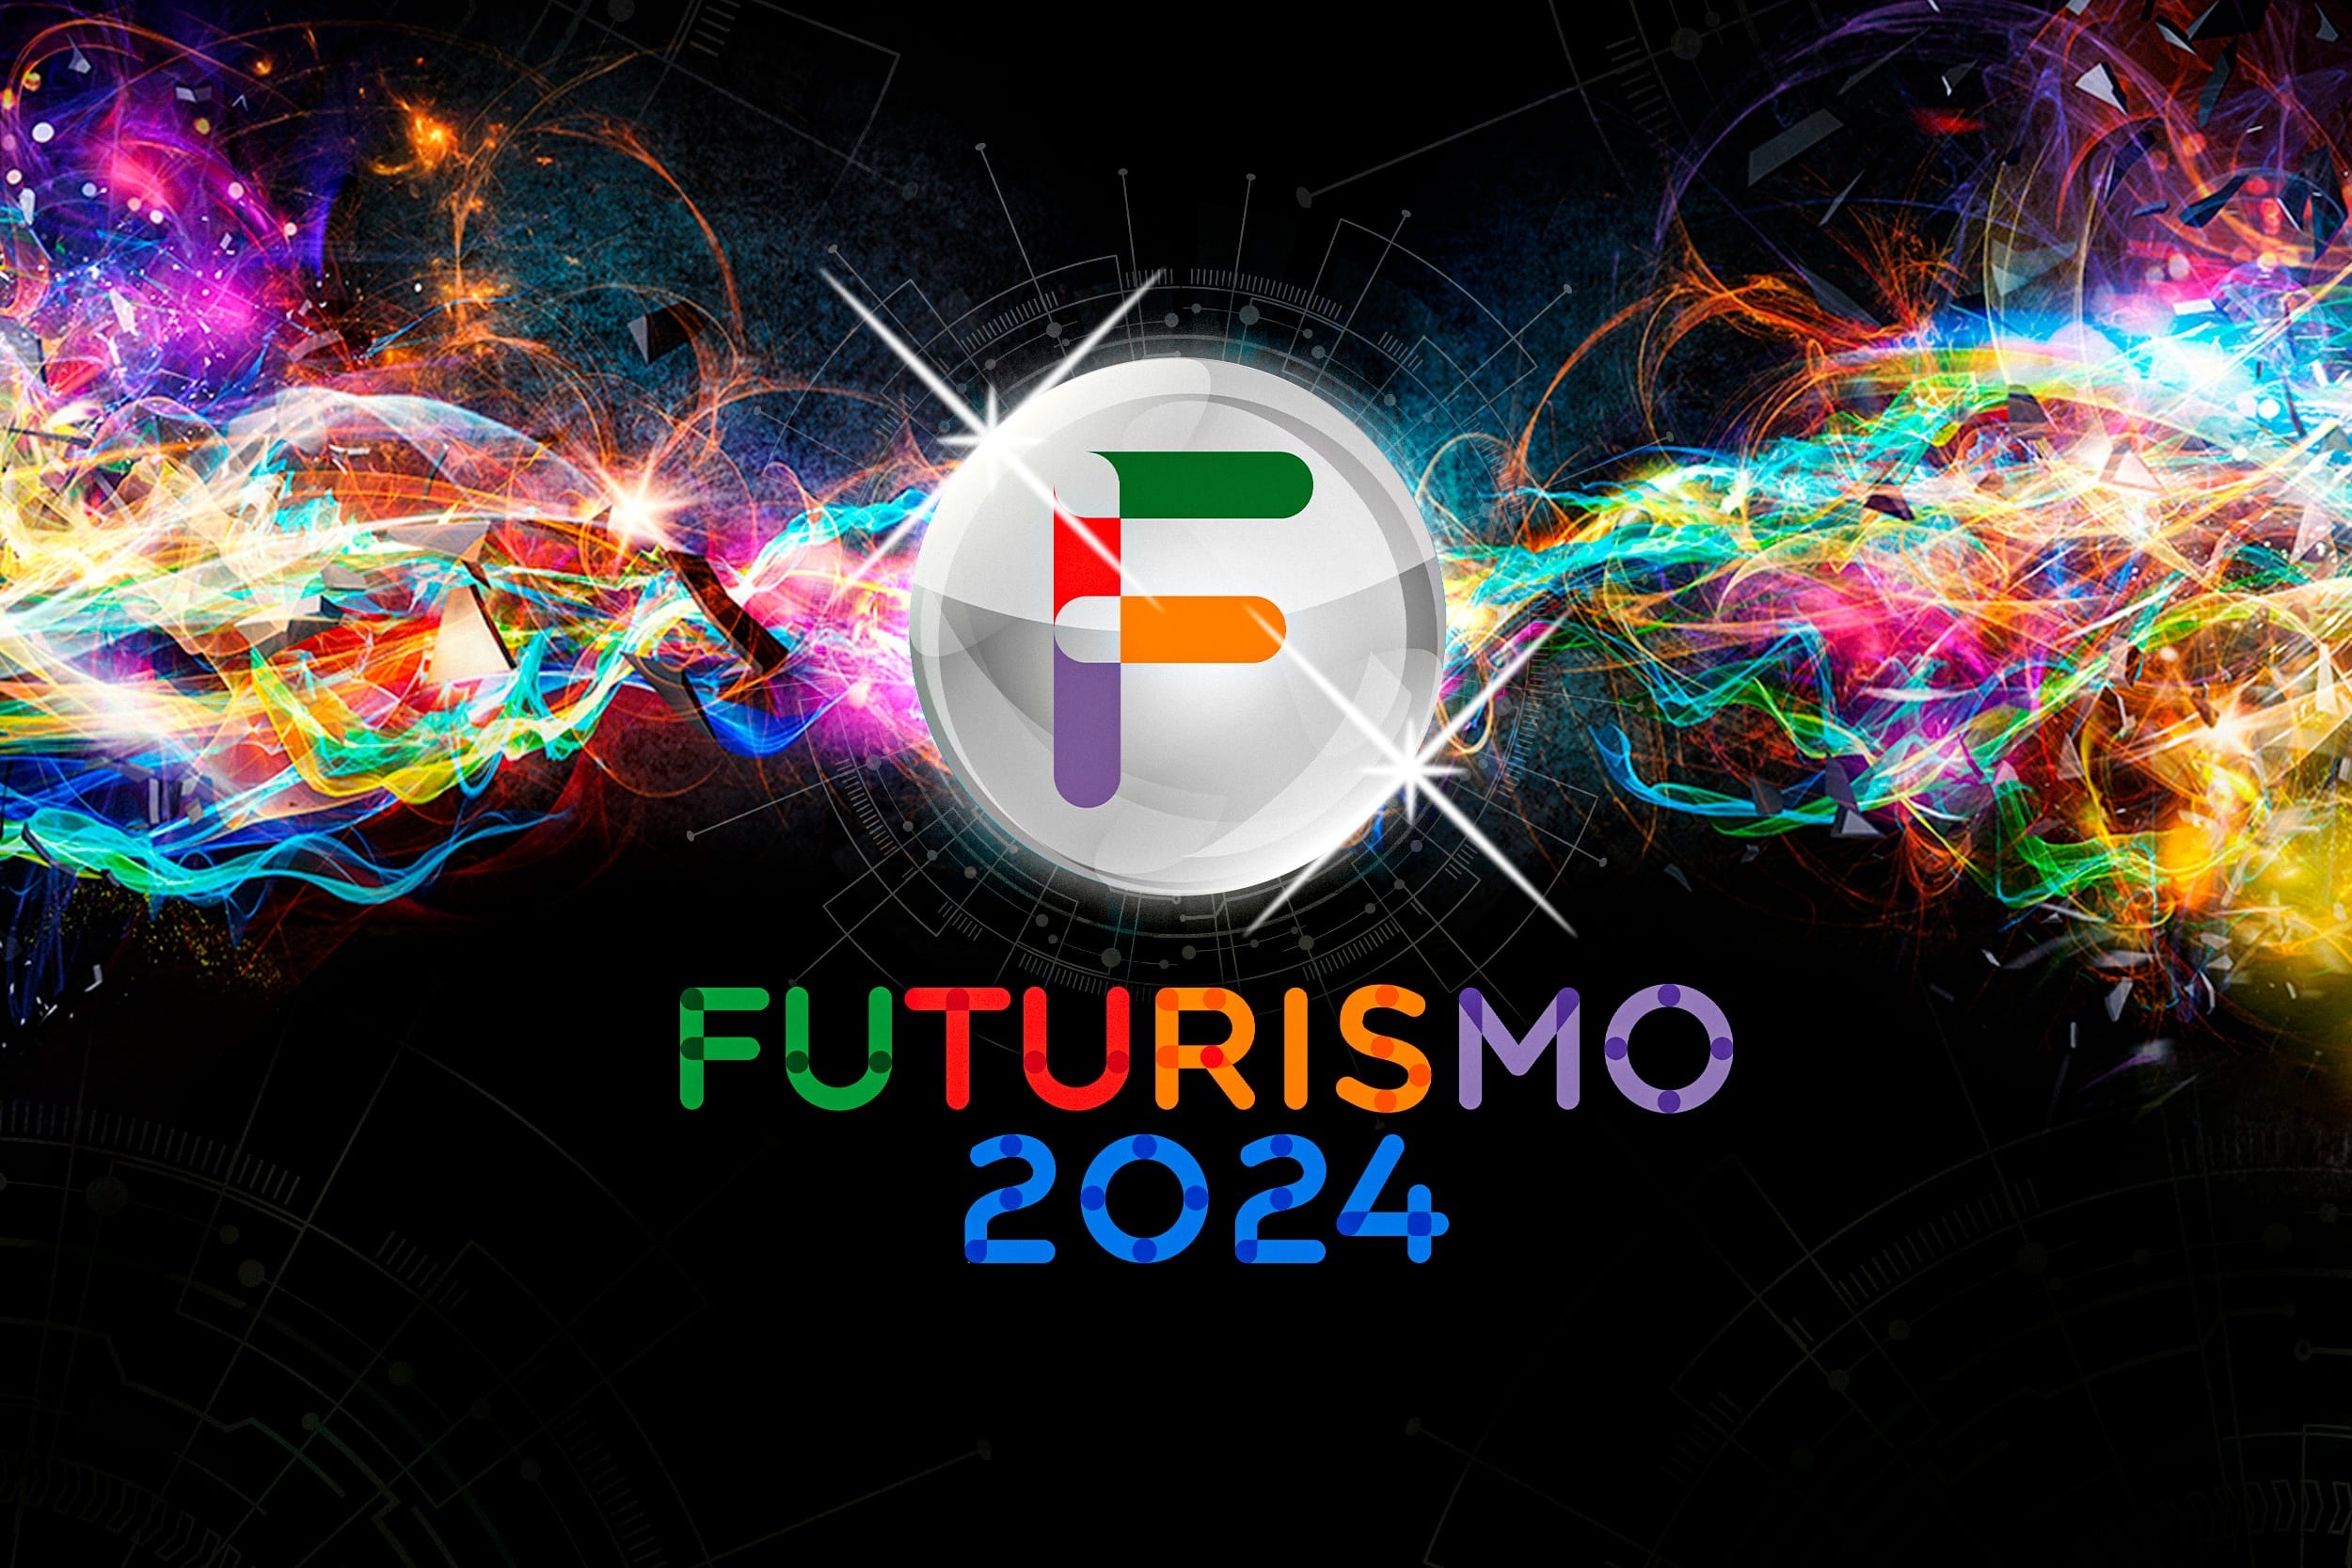 futurismo 2024 se muestra en un fondo colorido